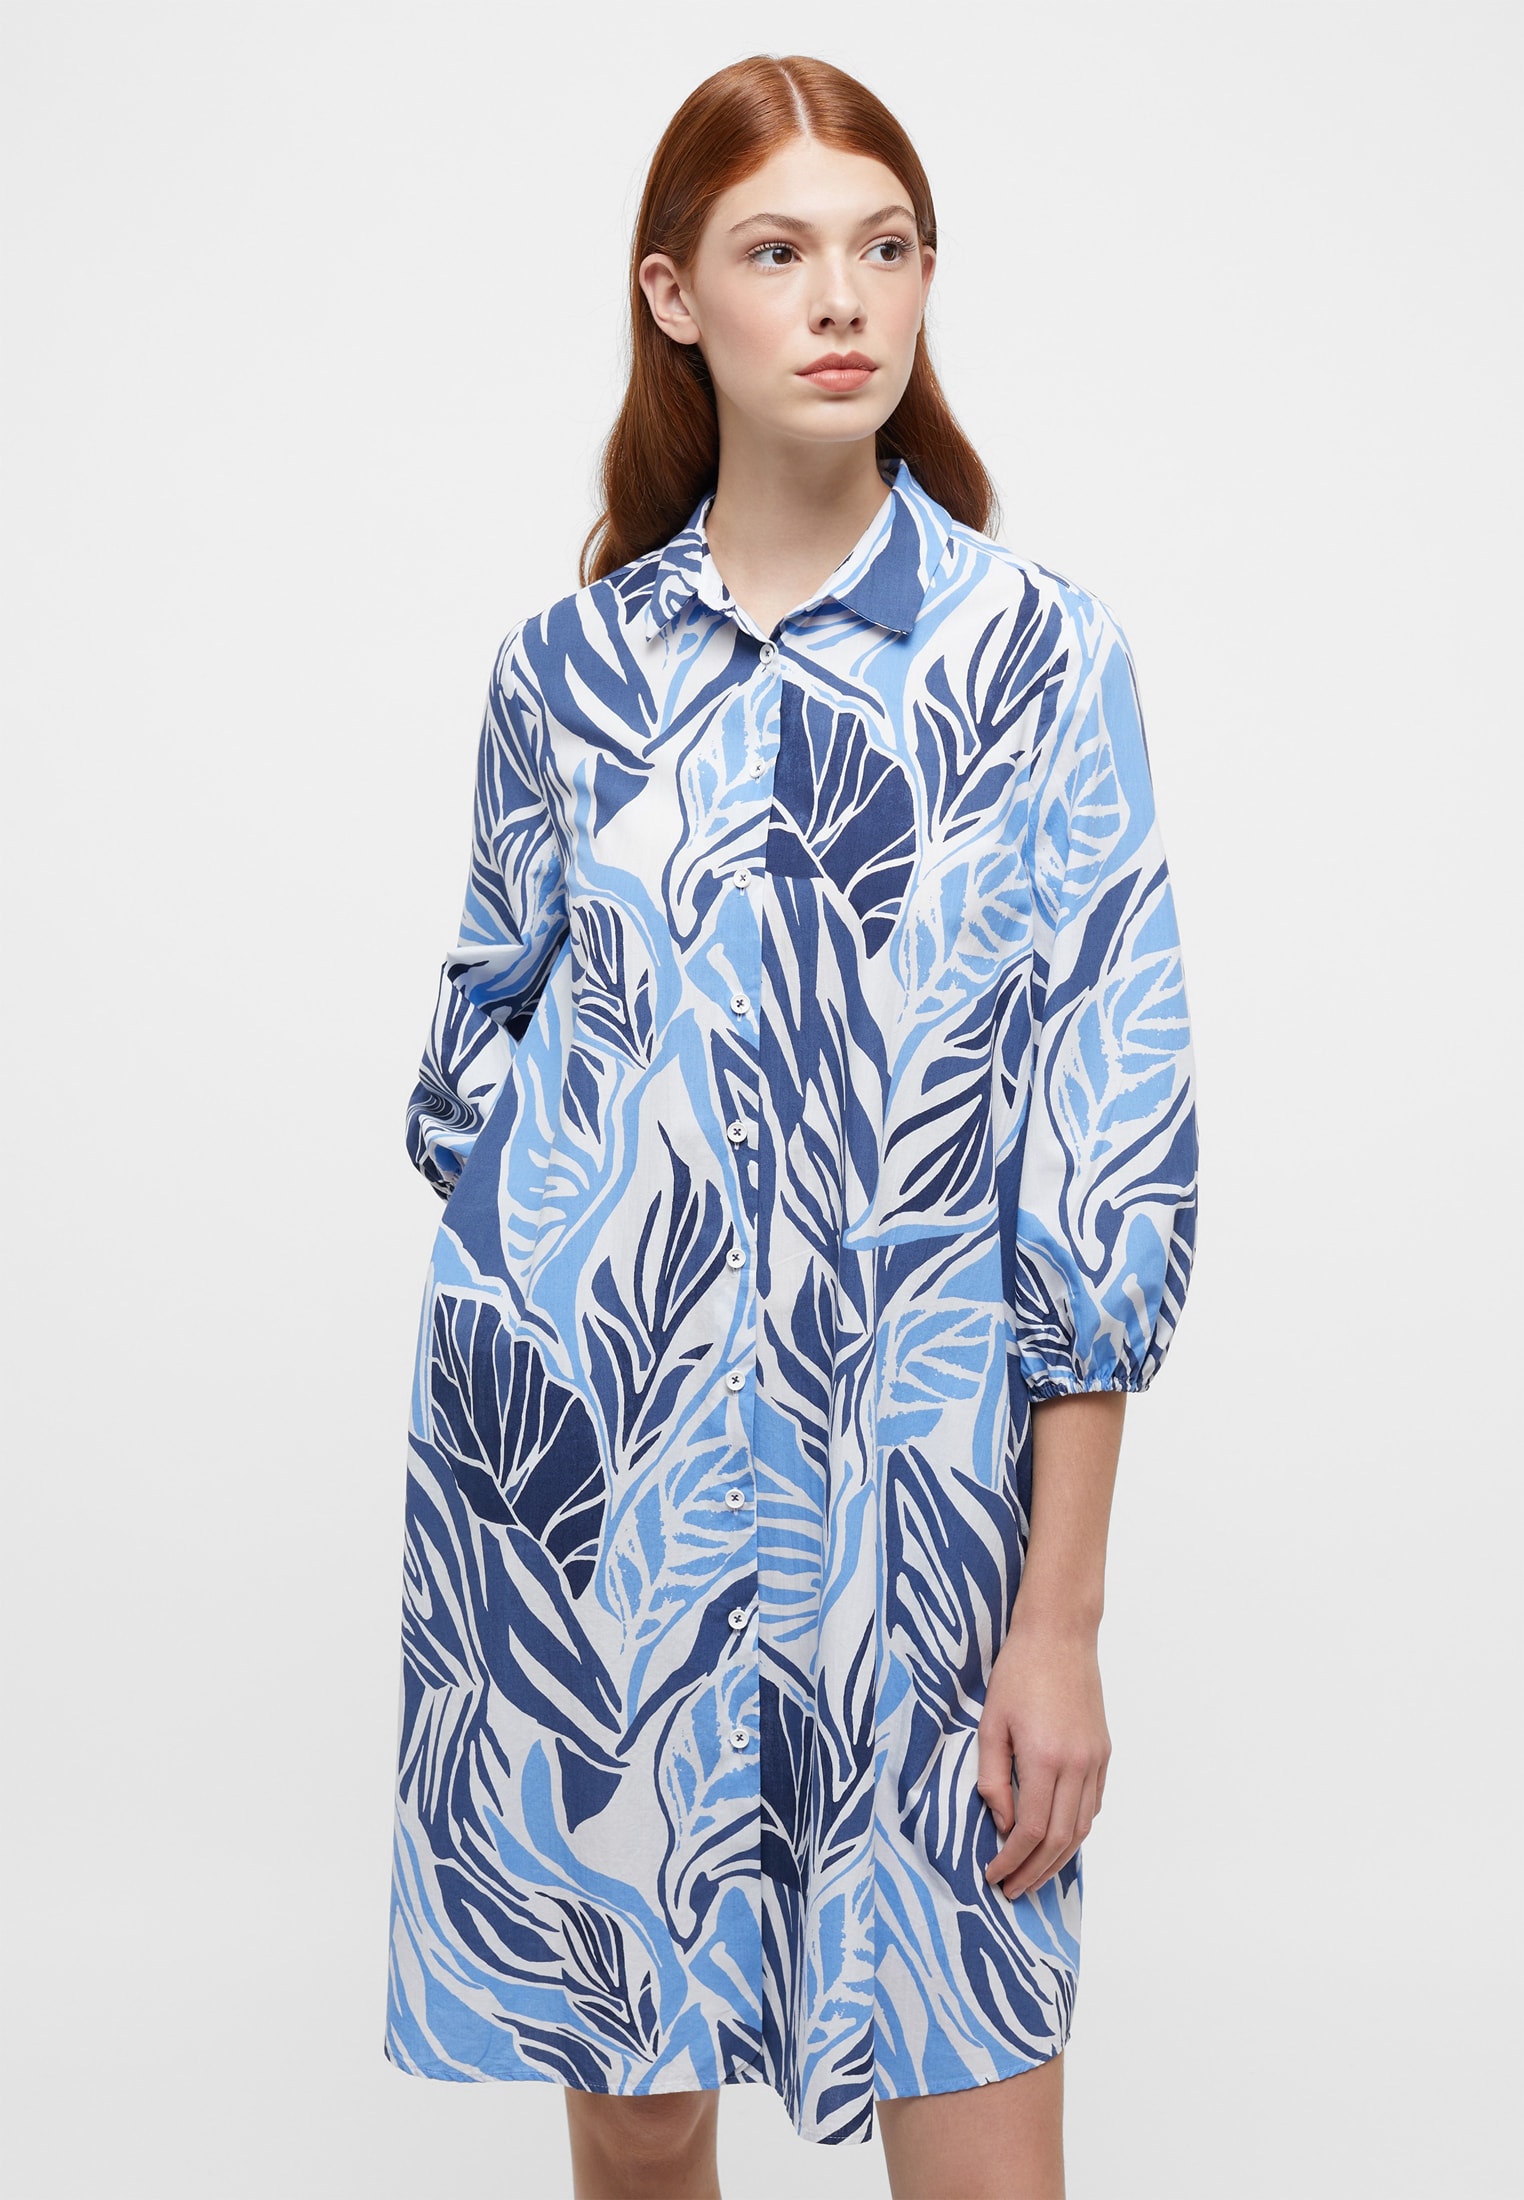 Shirt dress in indigo printed